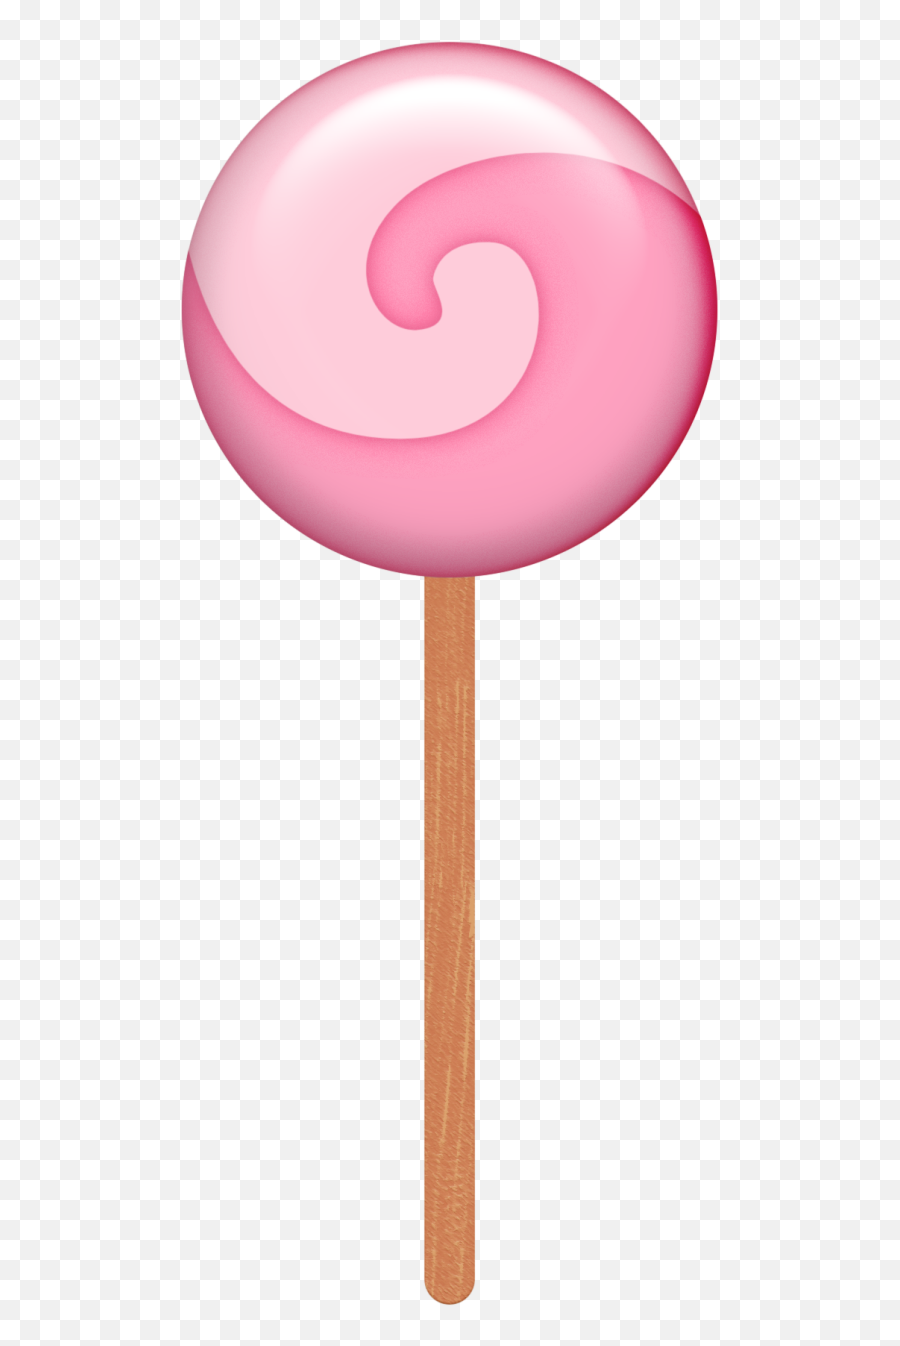 Transparent Background Lollipop Candy - Lollipop Candy Clipart Transparent Background Emoji,Candy Clipart